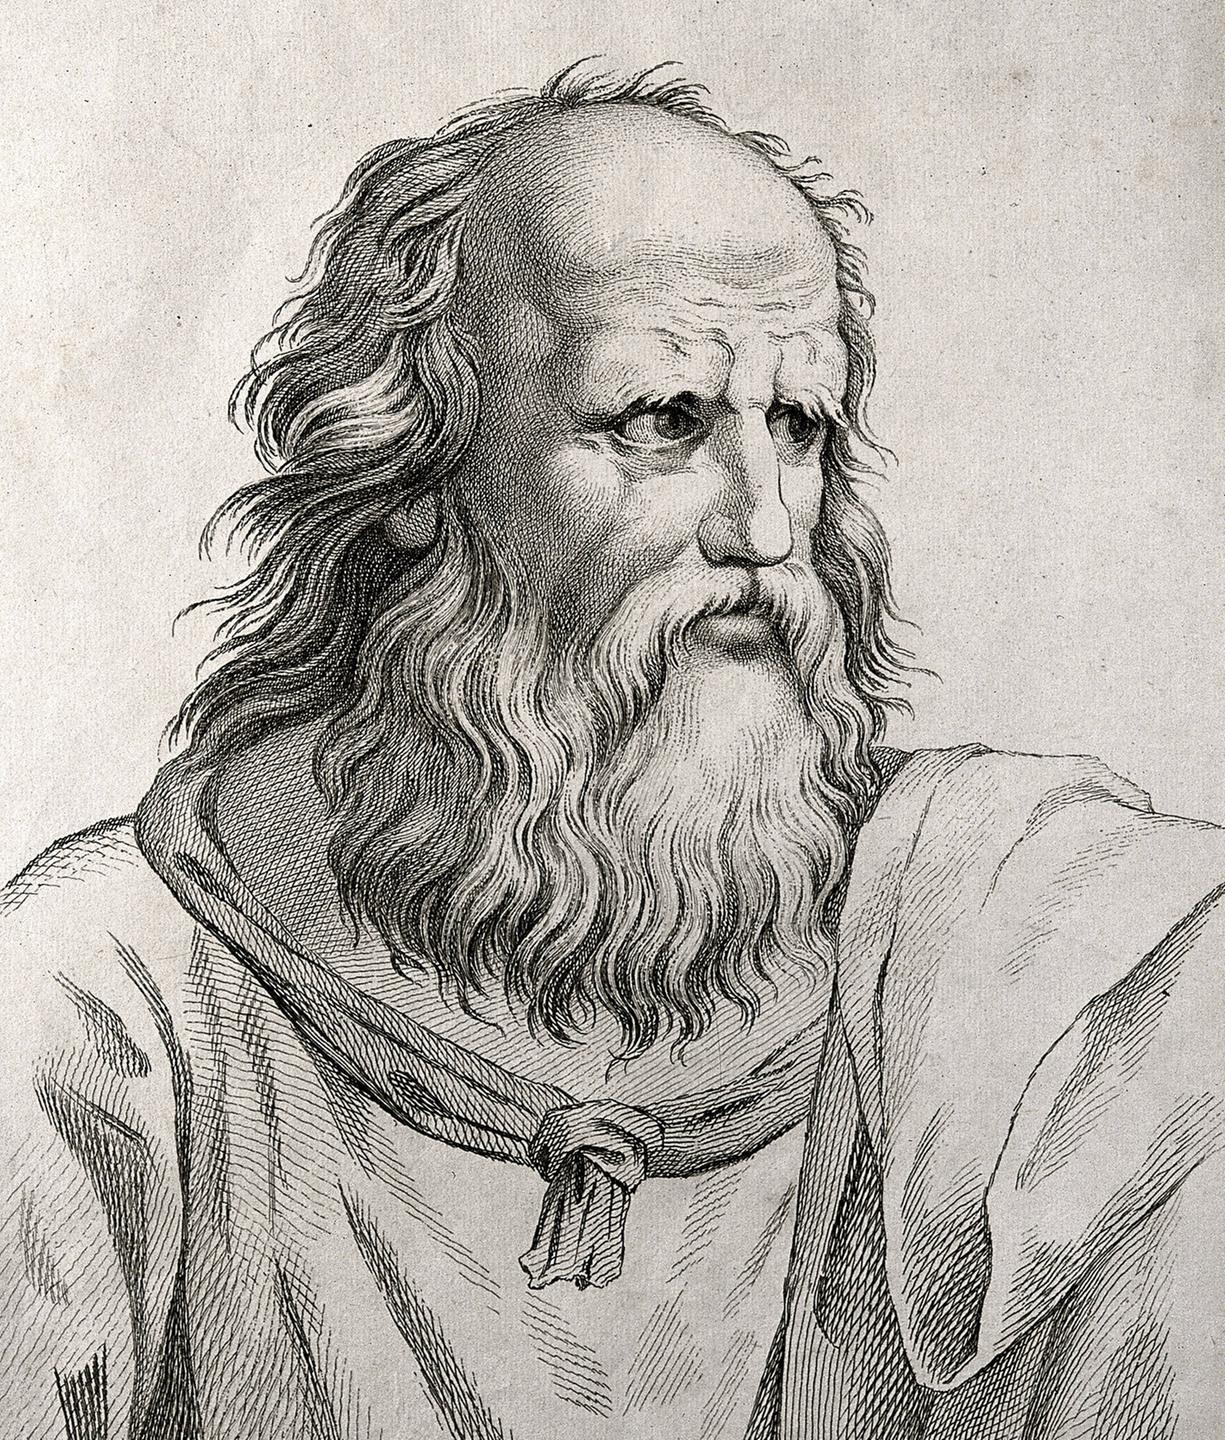 Porträtzeichnung von dem griechischen Philosoph Platon, ca. 1783.